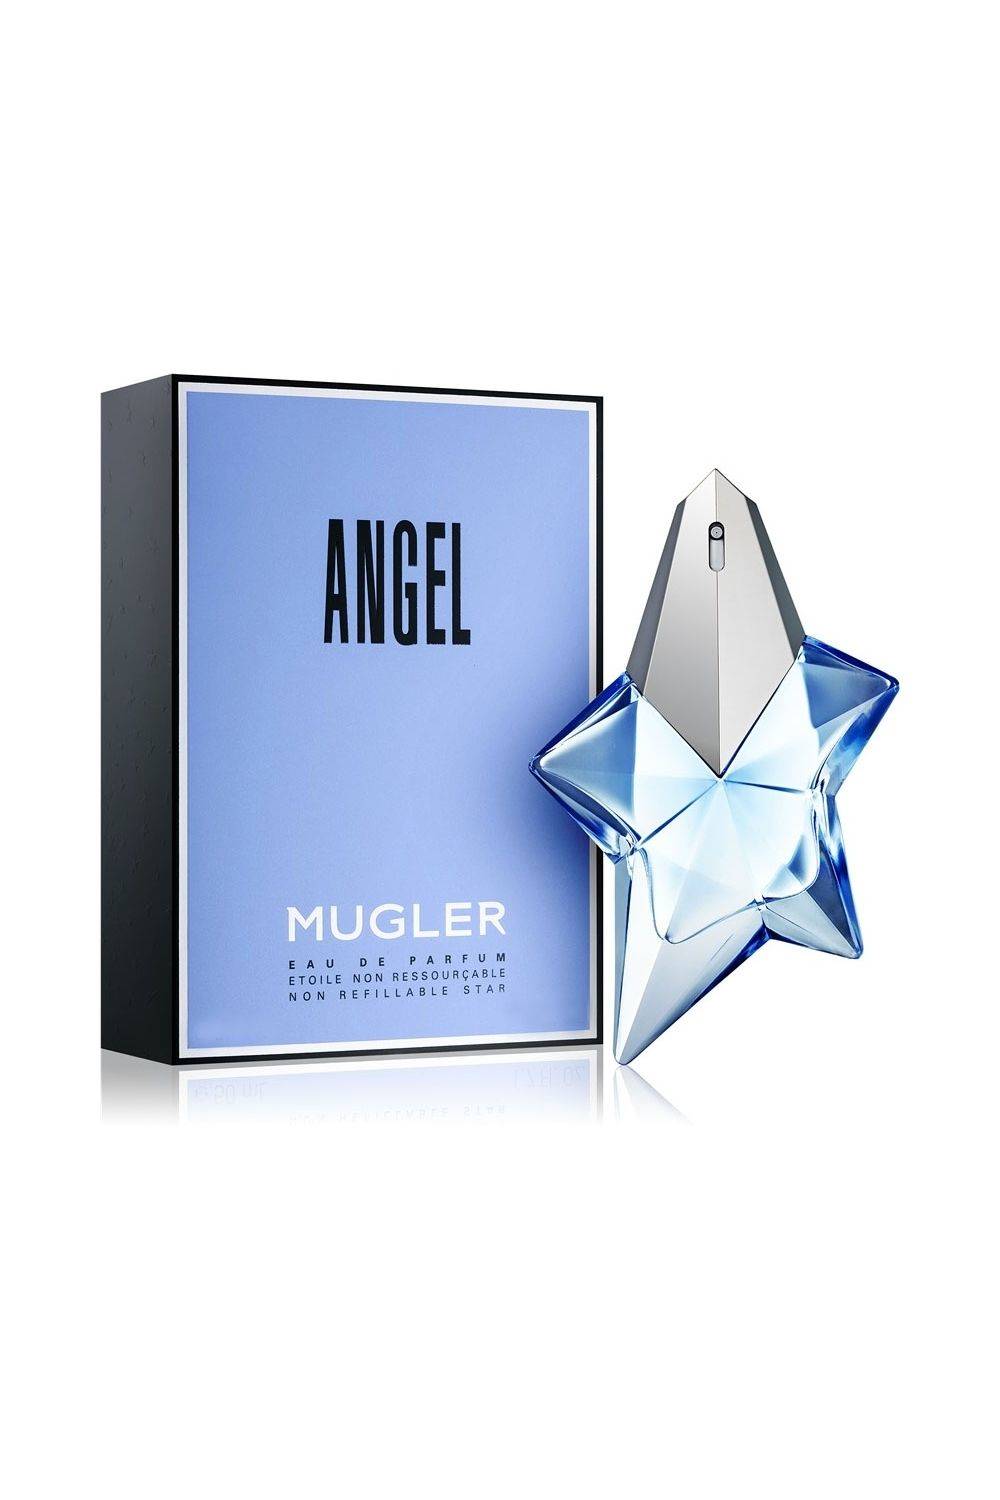 Angel de Thierry Mugler